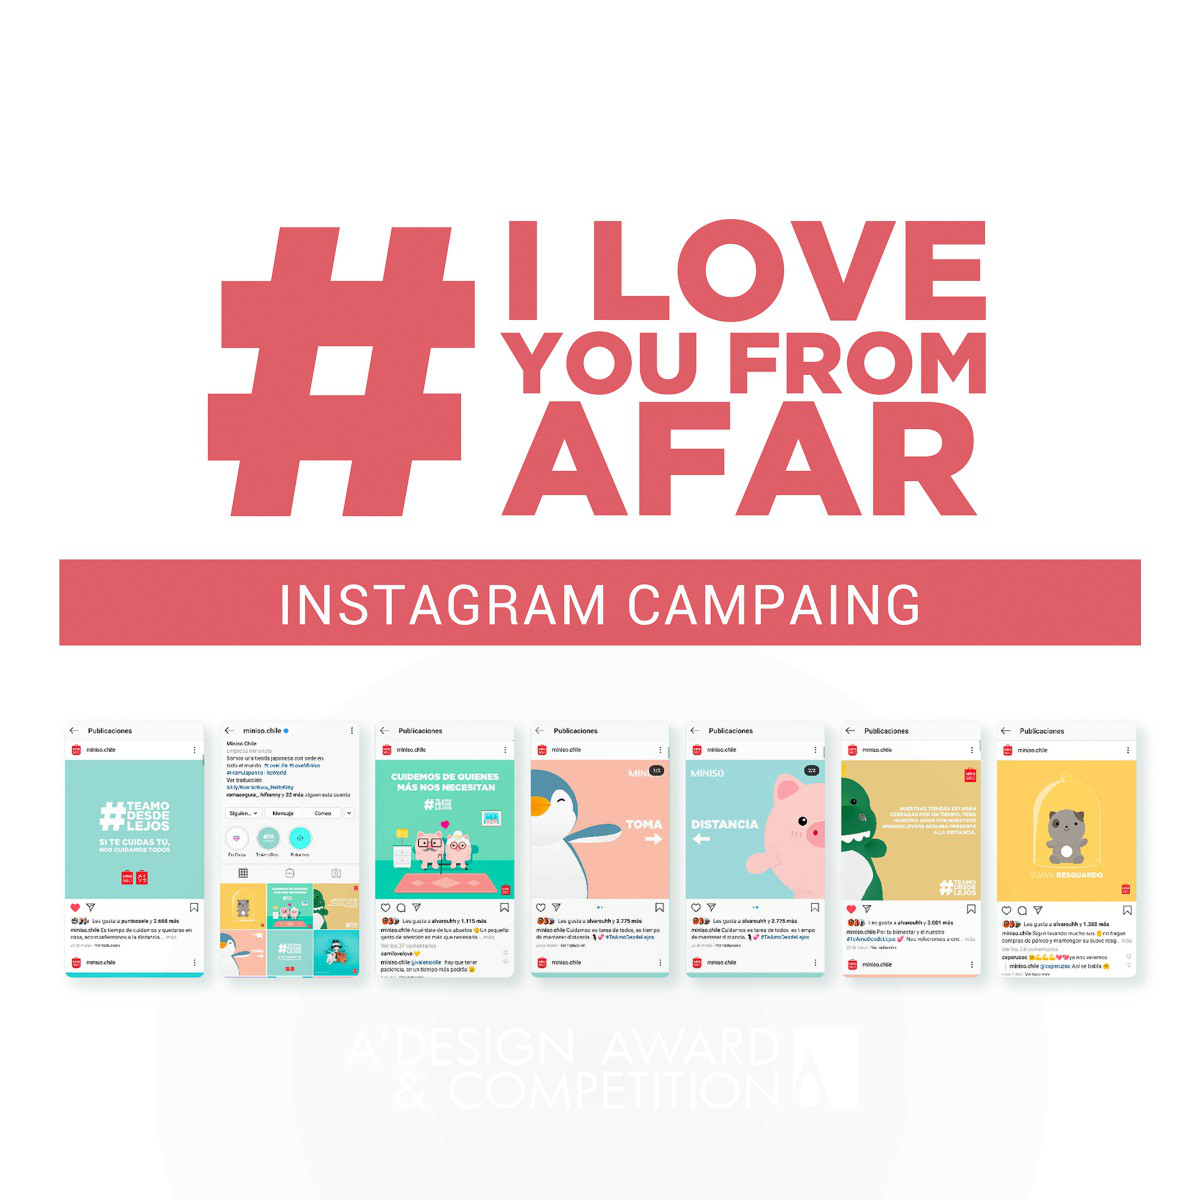 Miniso's "I Love You From Afar" Kampagne bringt Liebe und Unterhaltung in Zeiten der Quarantäne